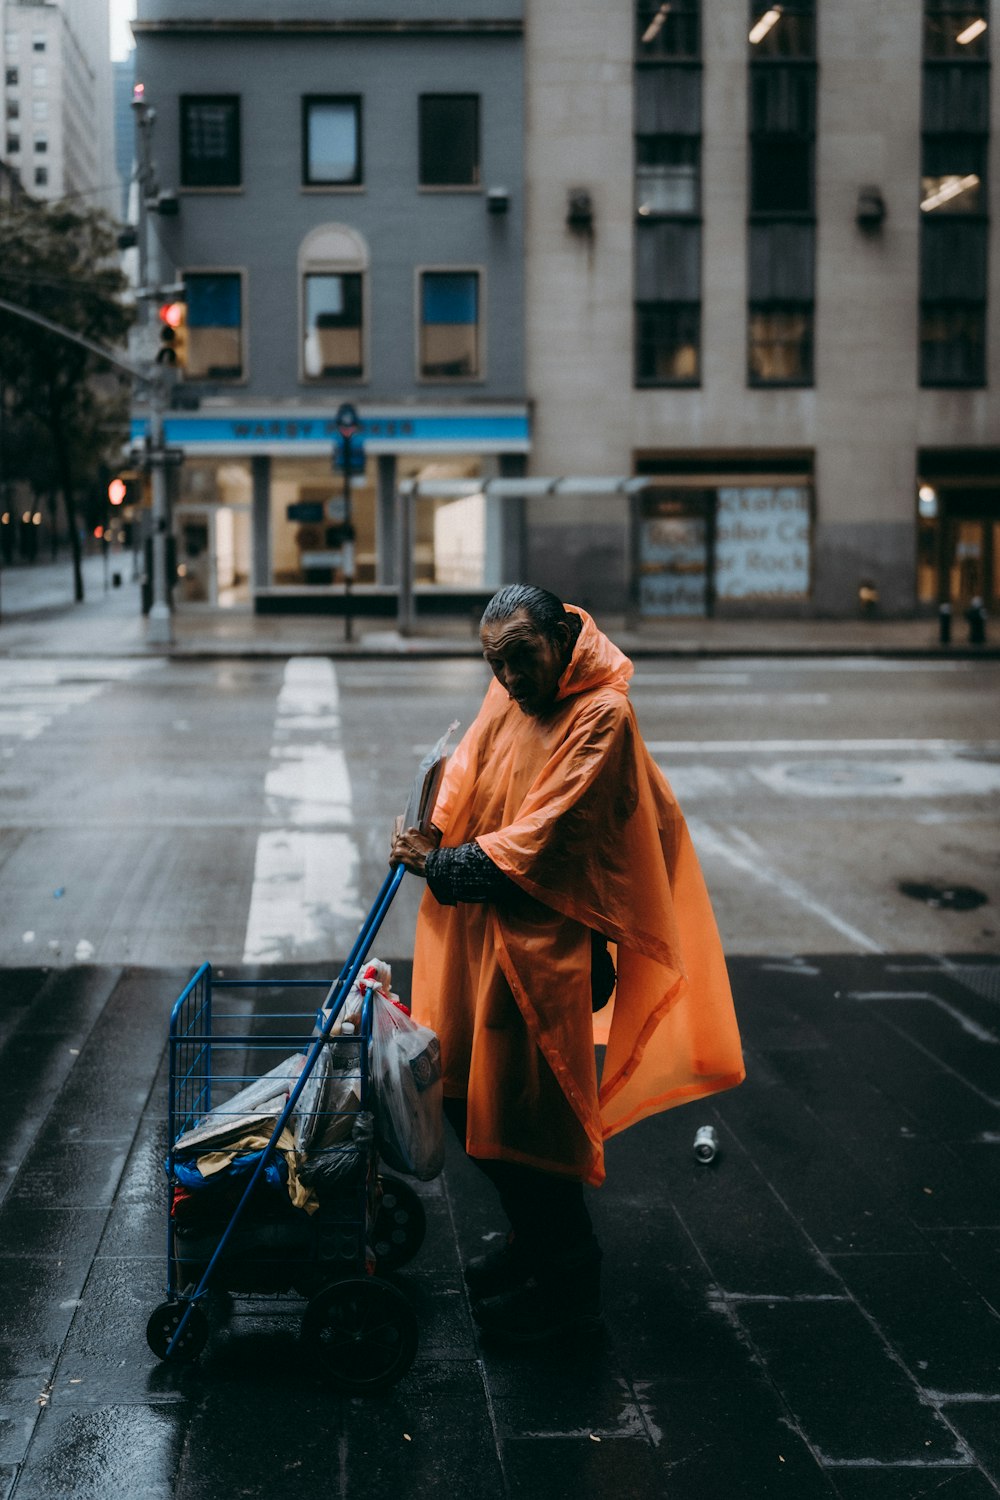 Mann in orangefarbener Robe sitzt tagsüber auf dem Bürgersteig